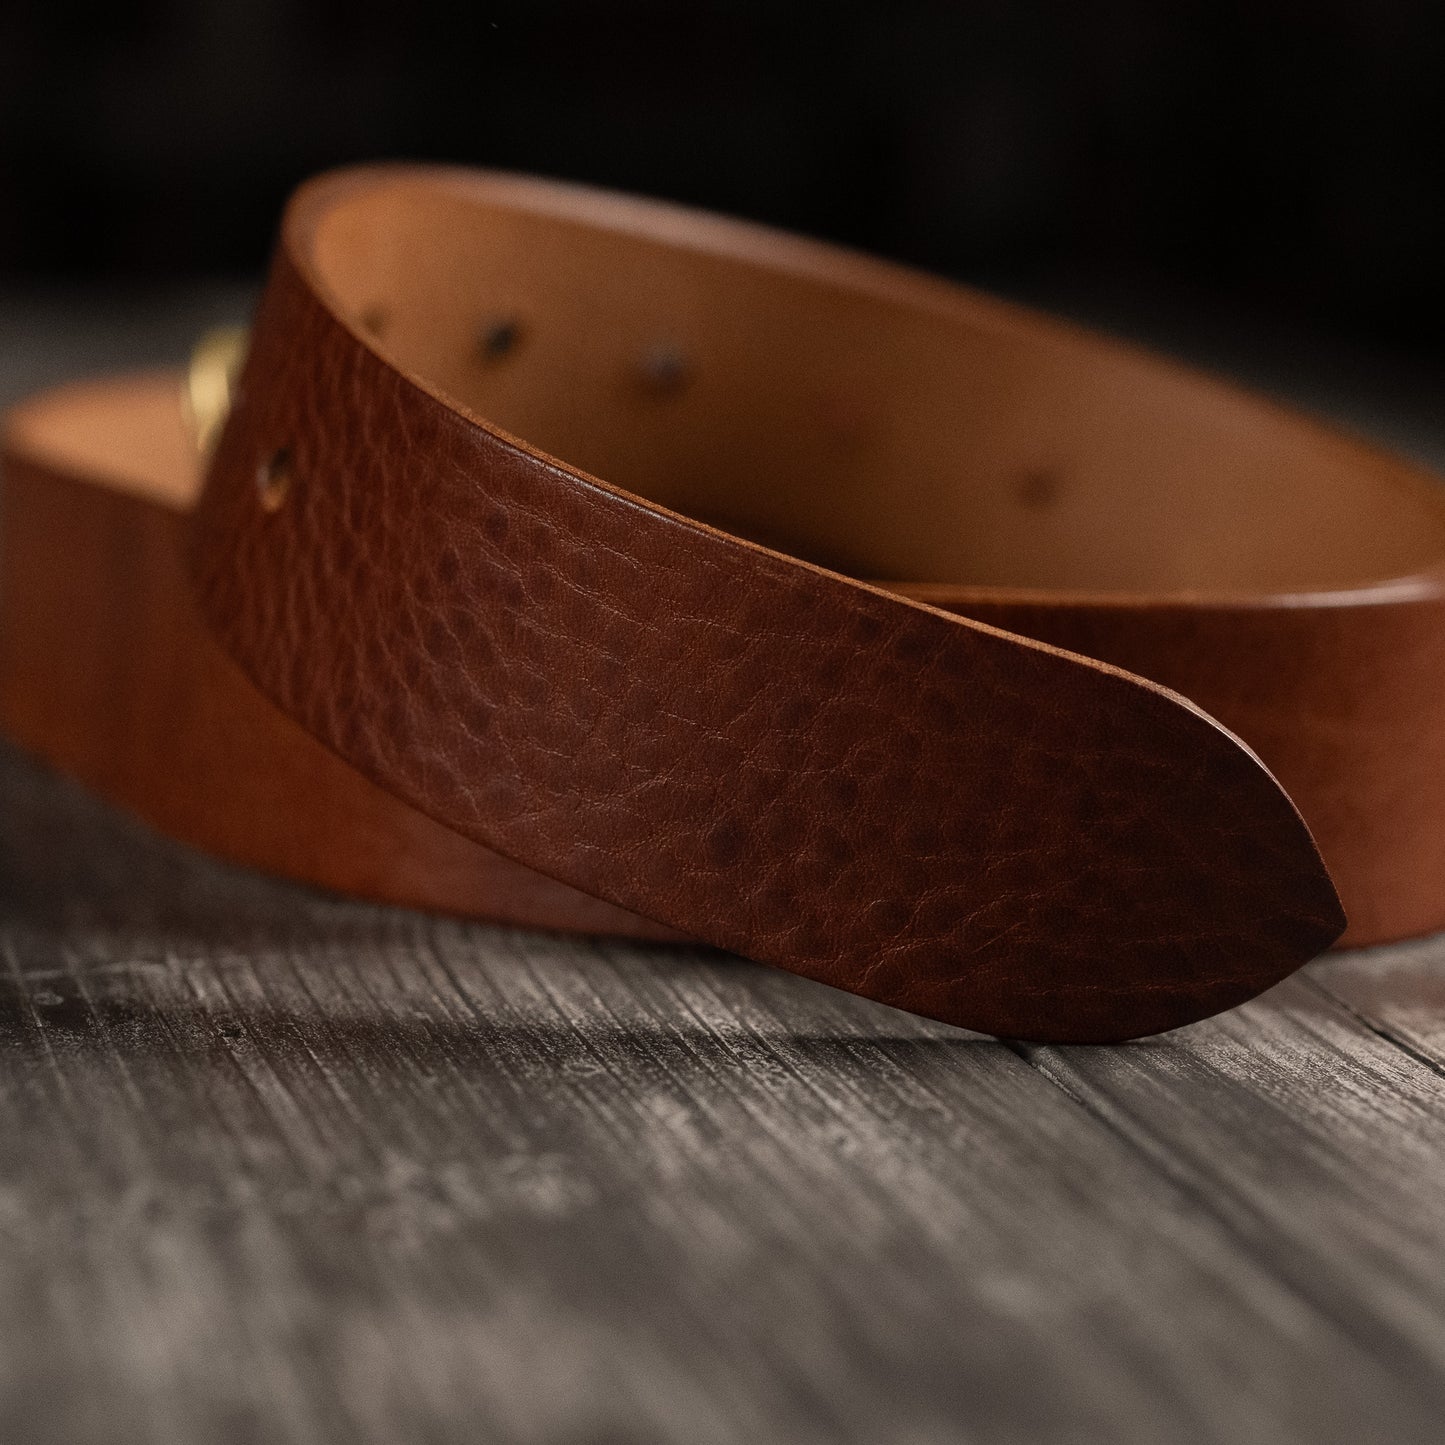 Leather belt 30mm width